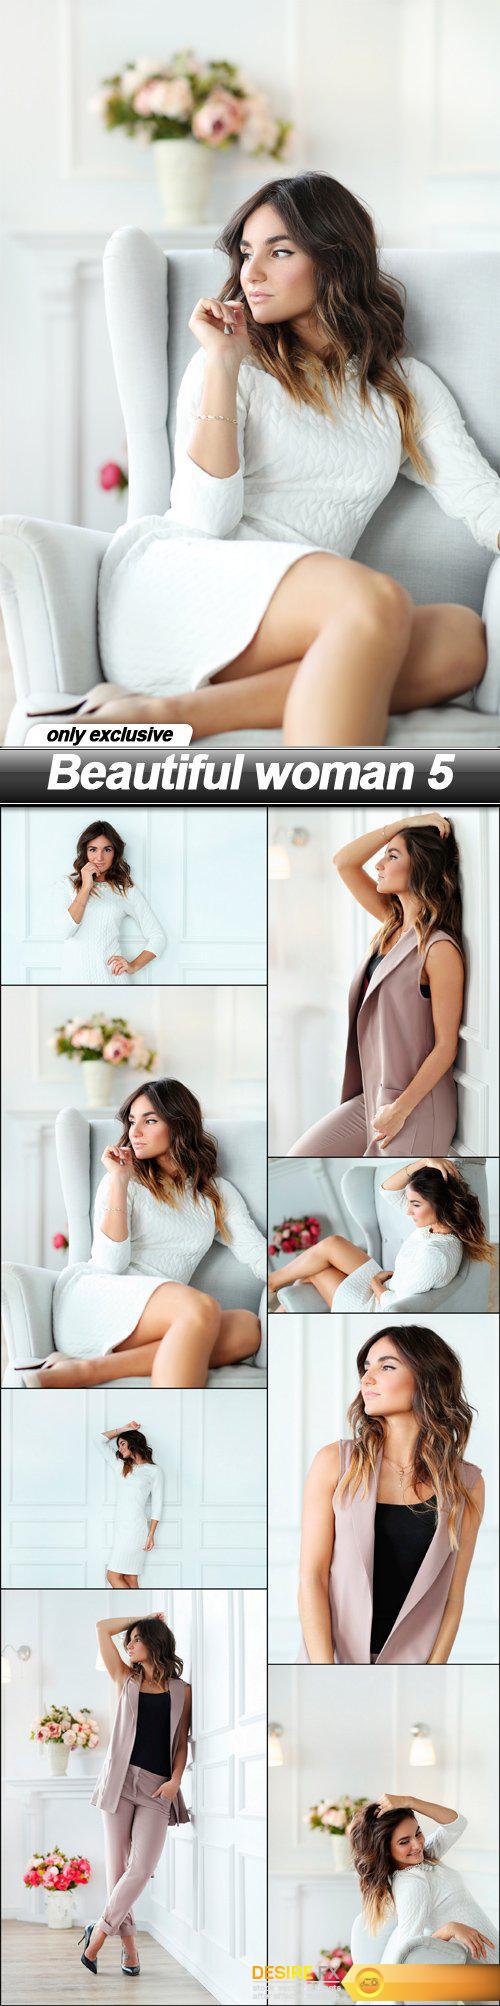 Beautiful woman 5 - 8 UHQ JPEG